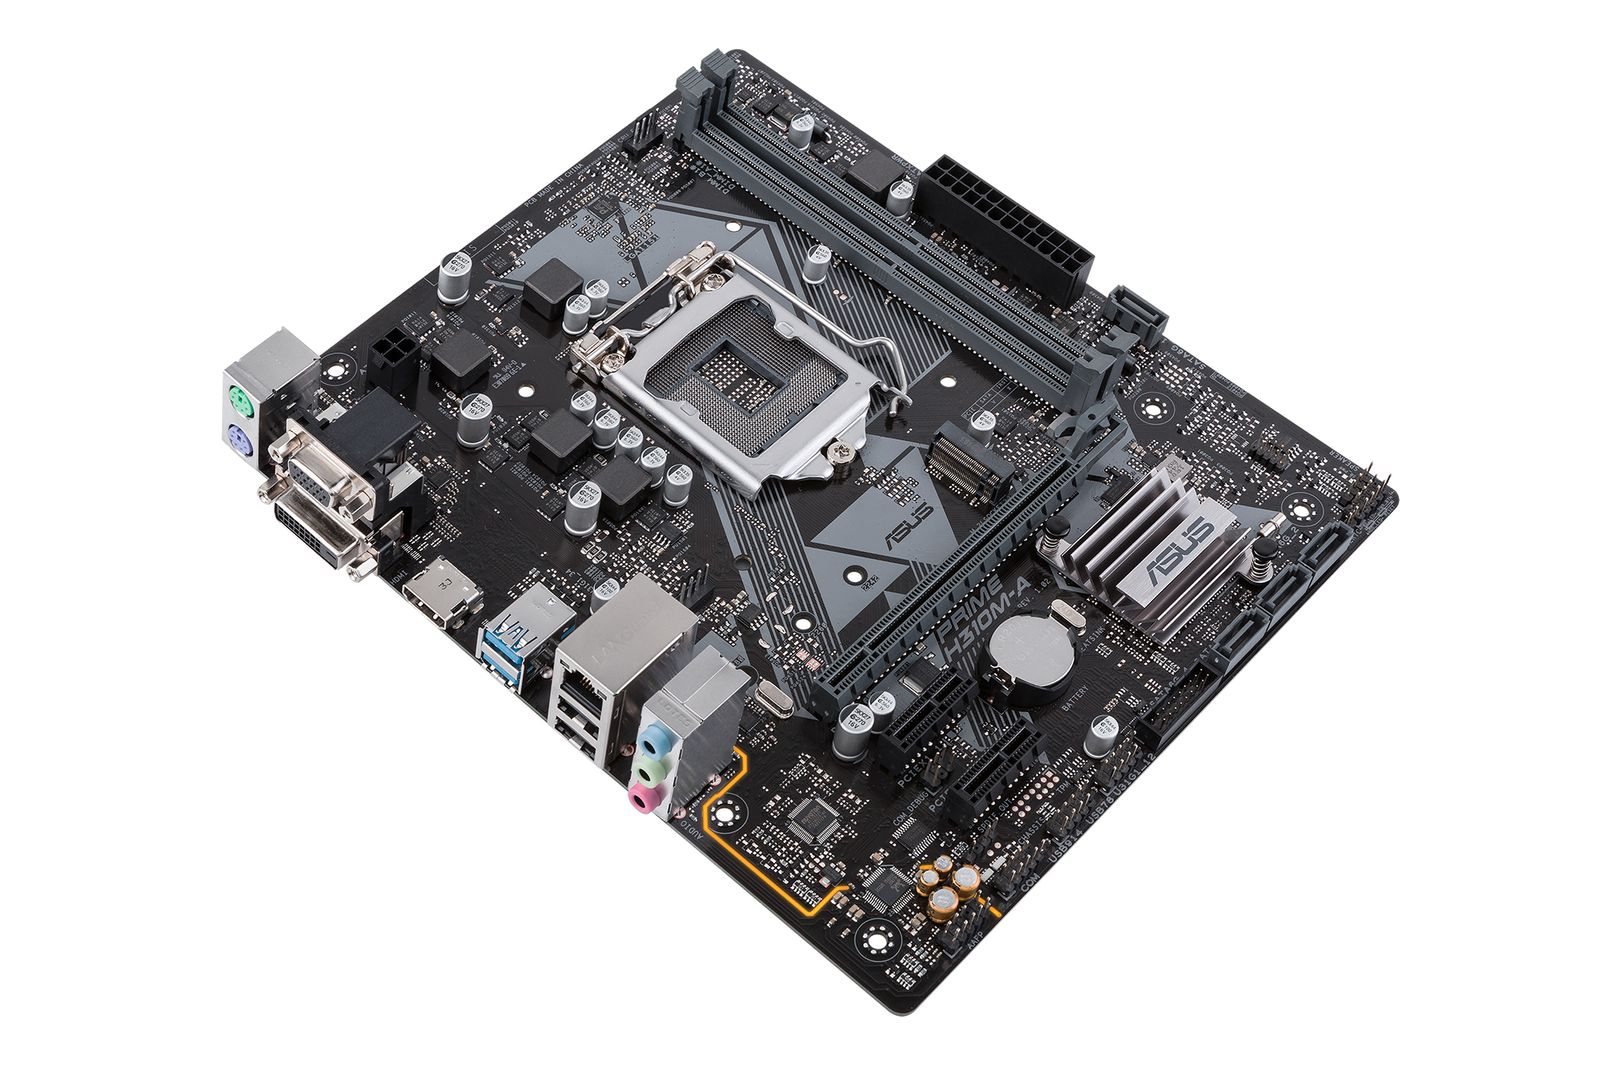 ASUS PRIME H310M-A Intel® H310 LGA 1151 (Socket H4) micro ATX